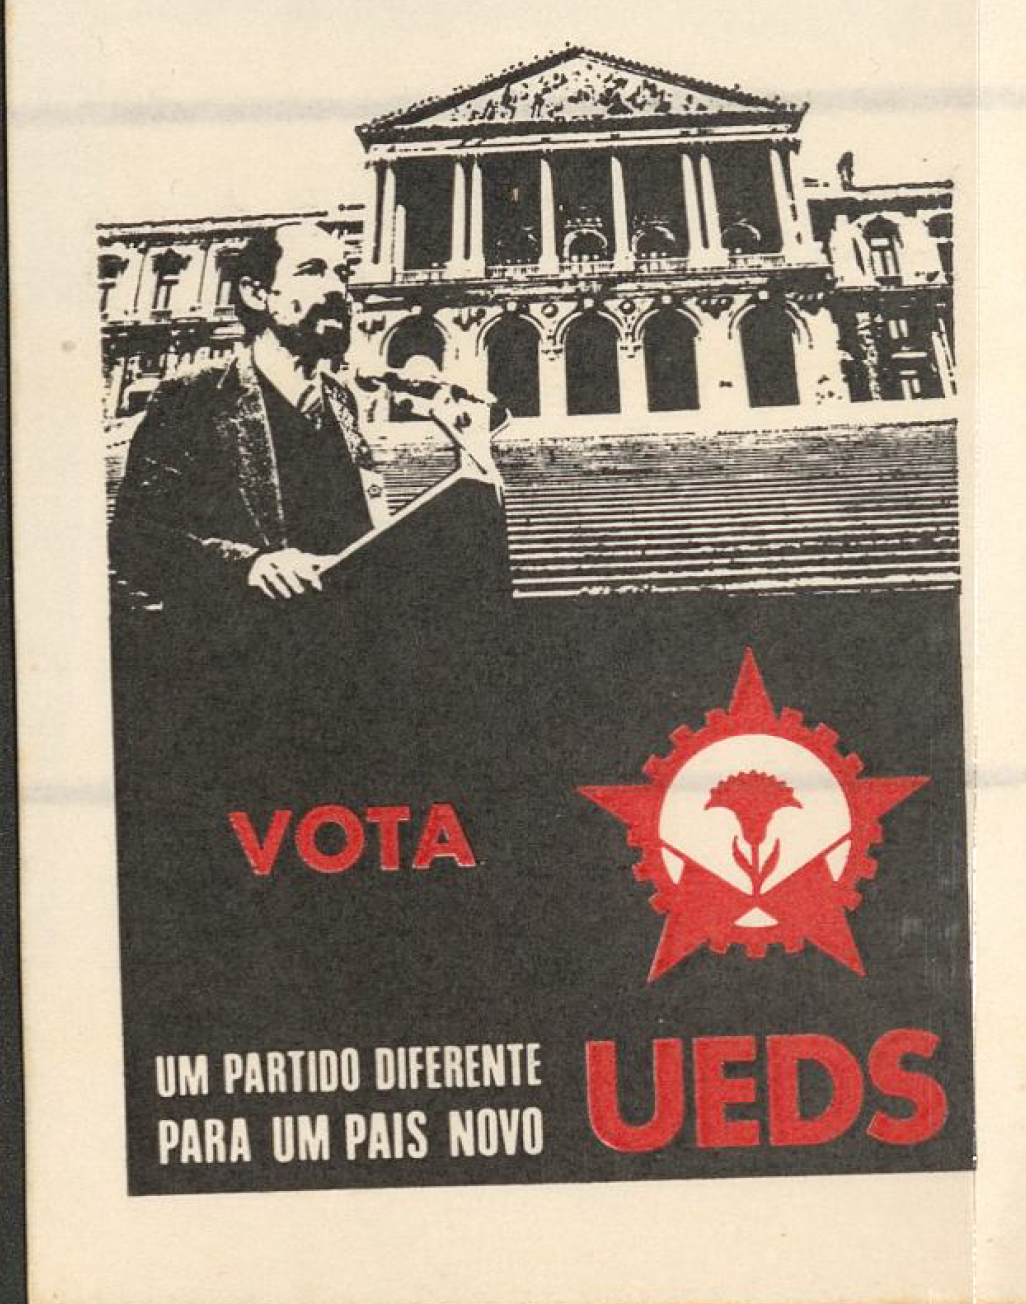 Vota UEDS